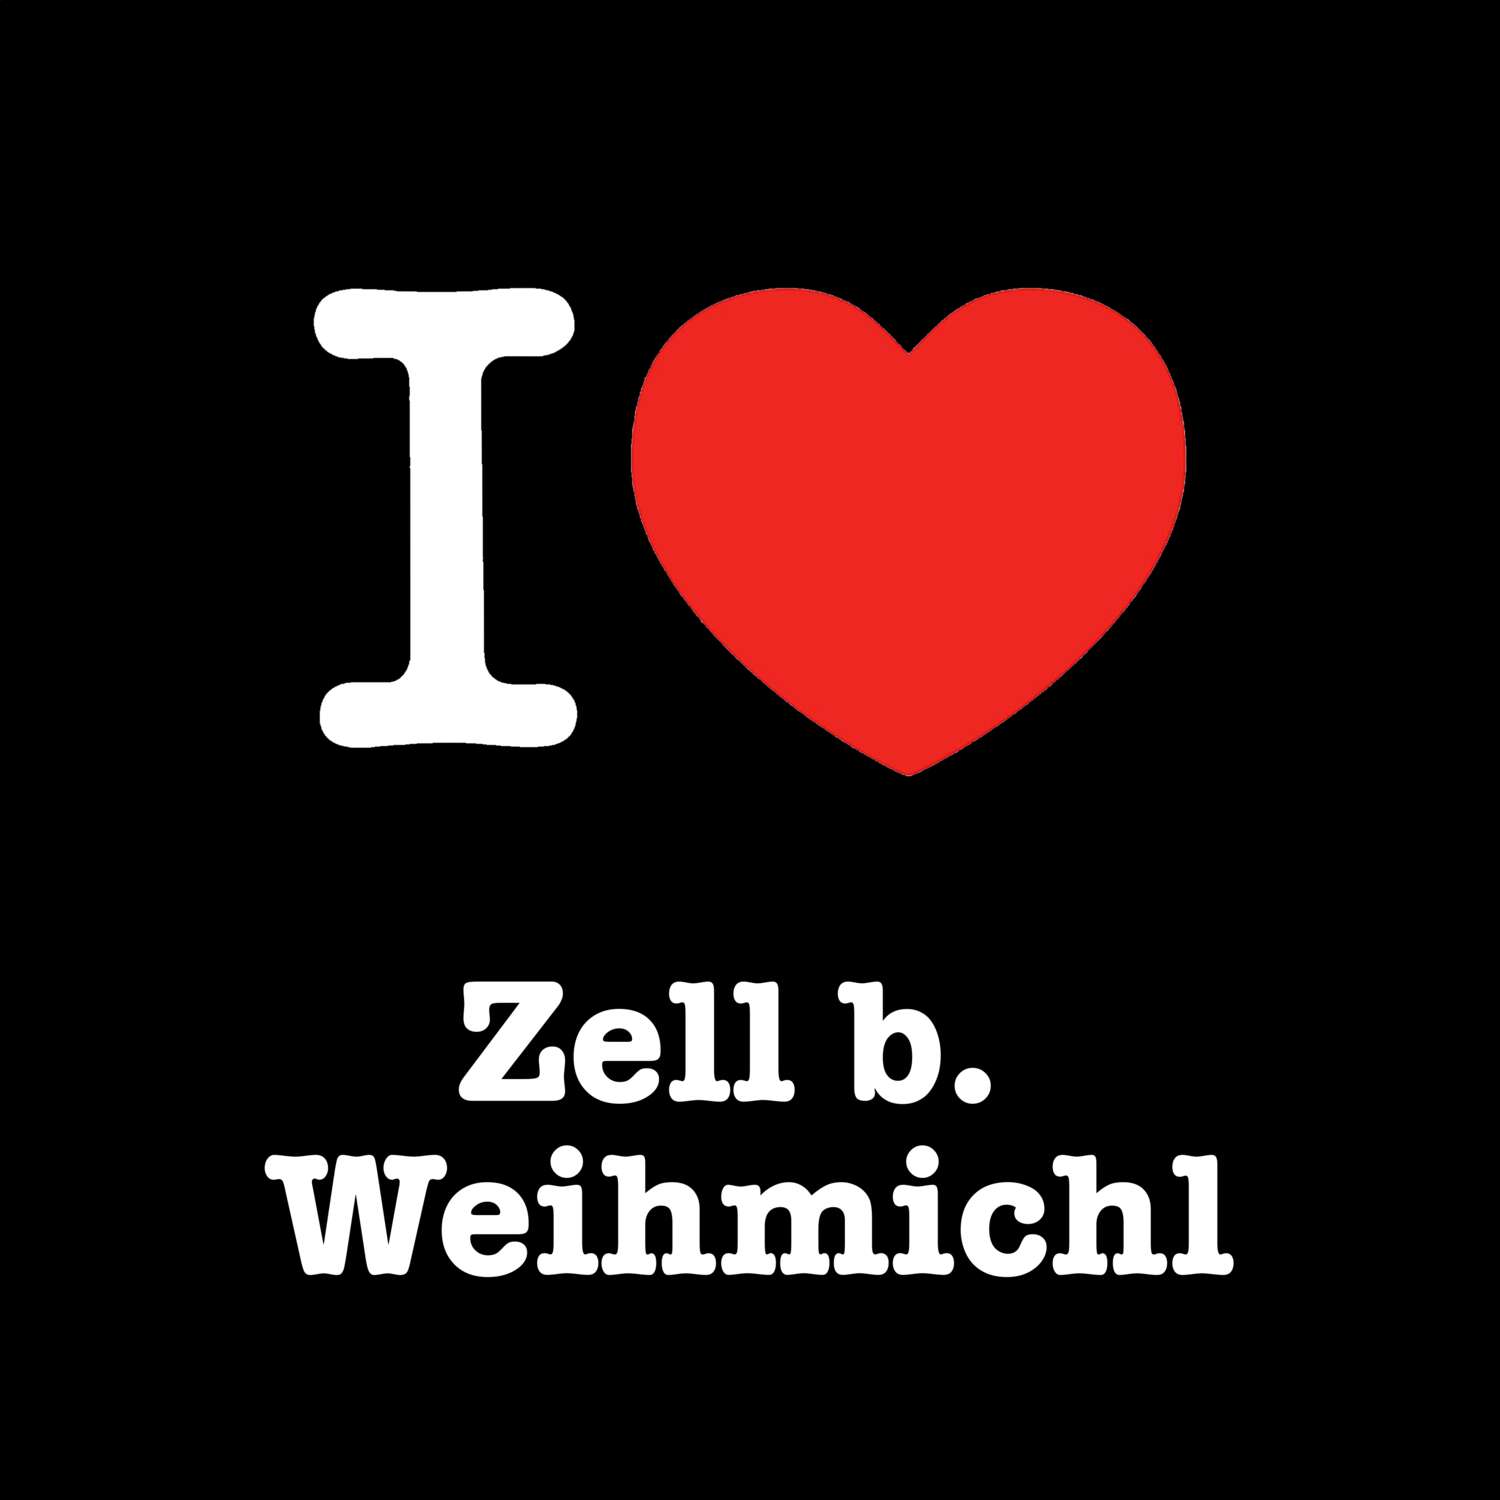 Zell b. Weihmichl T-Shirt »I love«